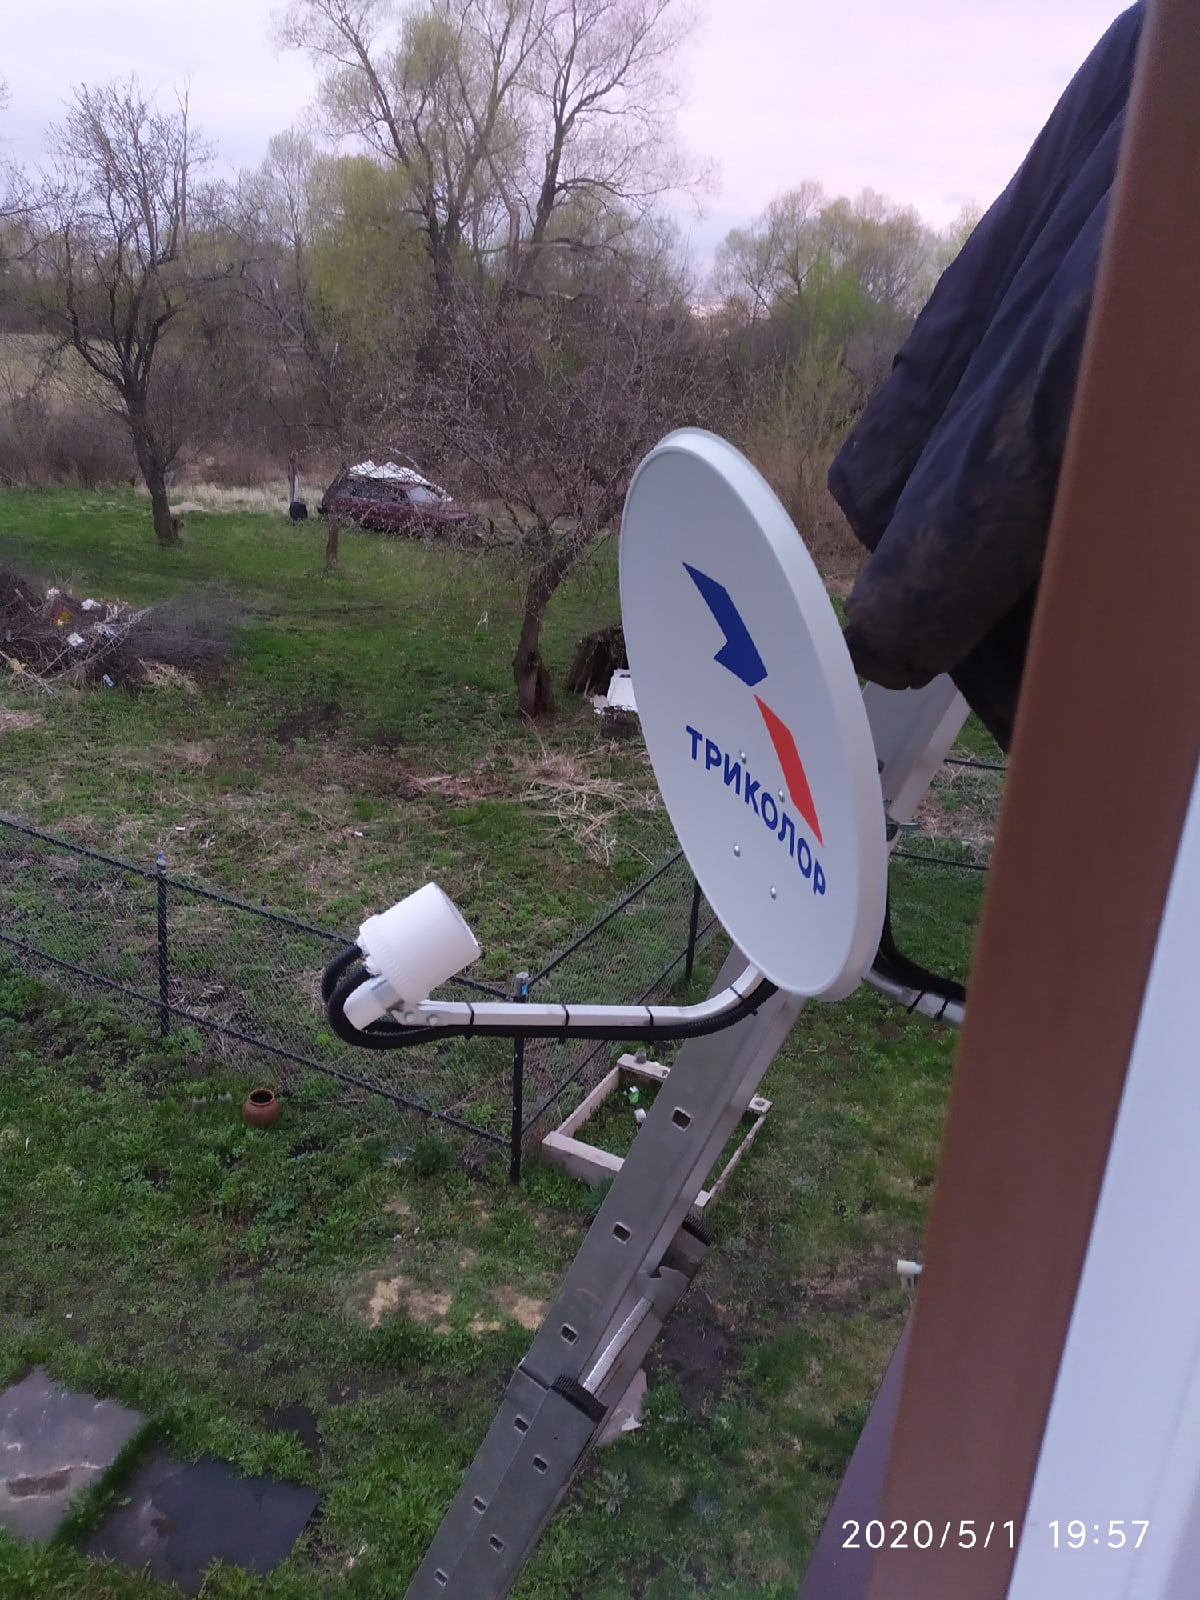 Интернет в деревне ракитино, Узловского района, Тульской области!